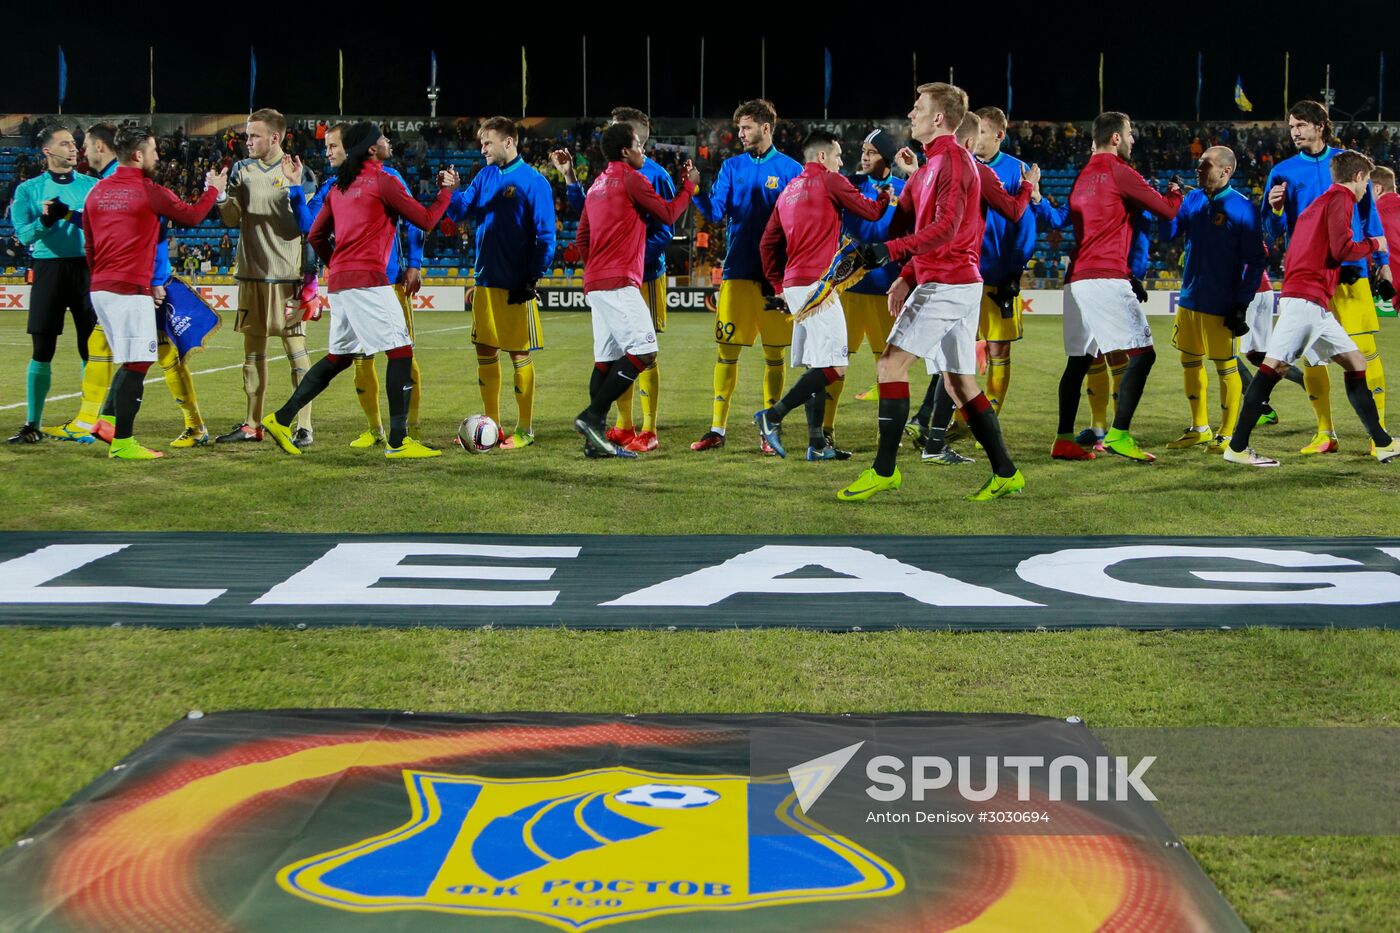 UEFA Europa League. Rostov v. Sparta